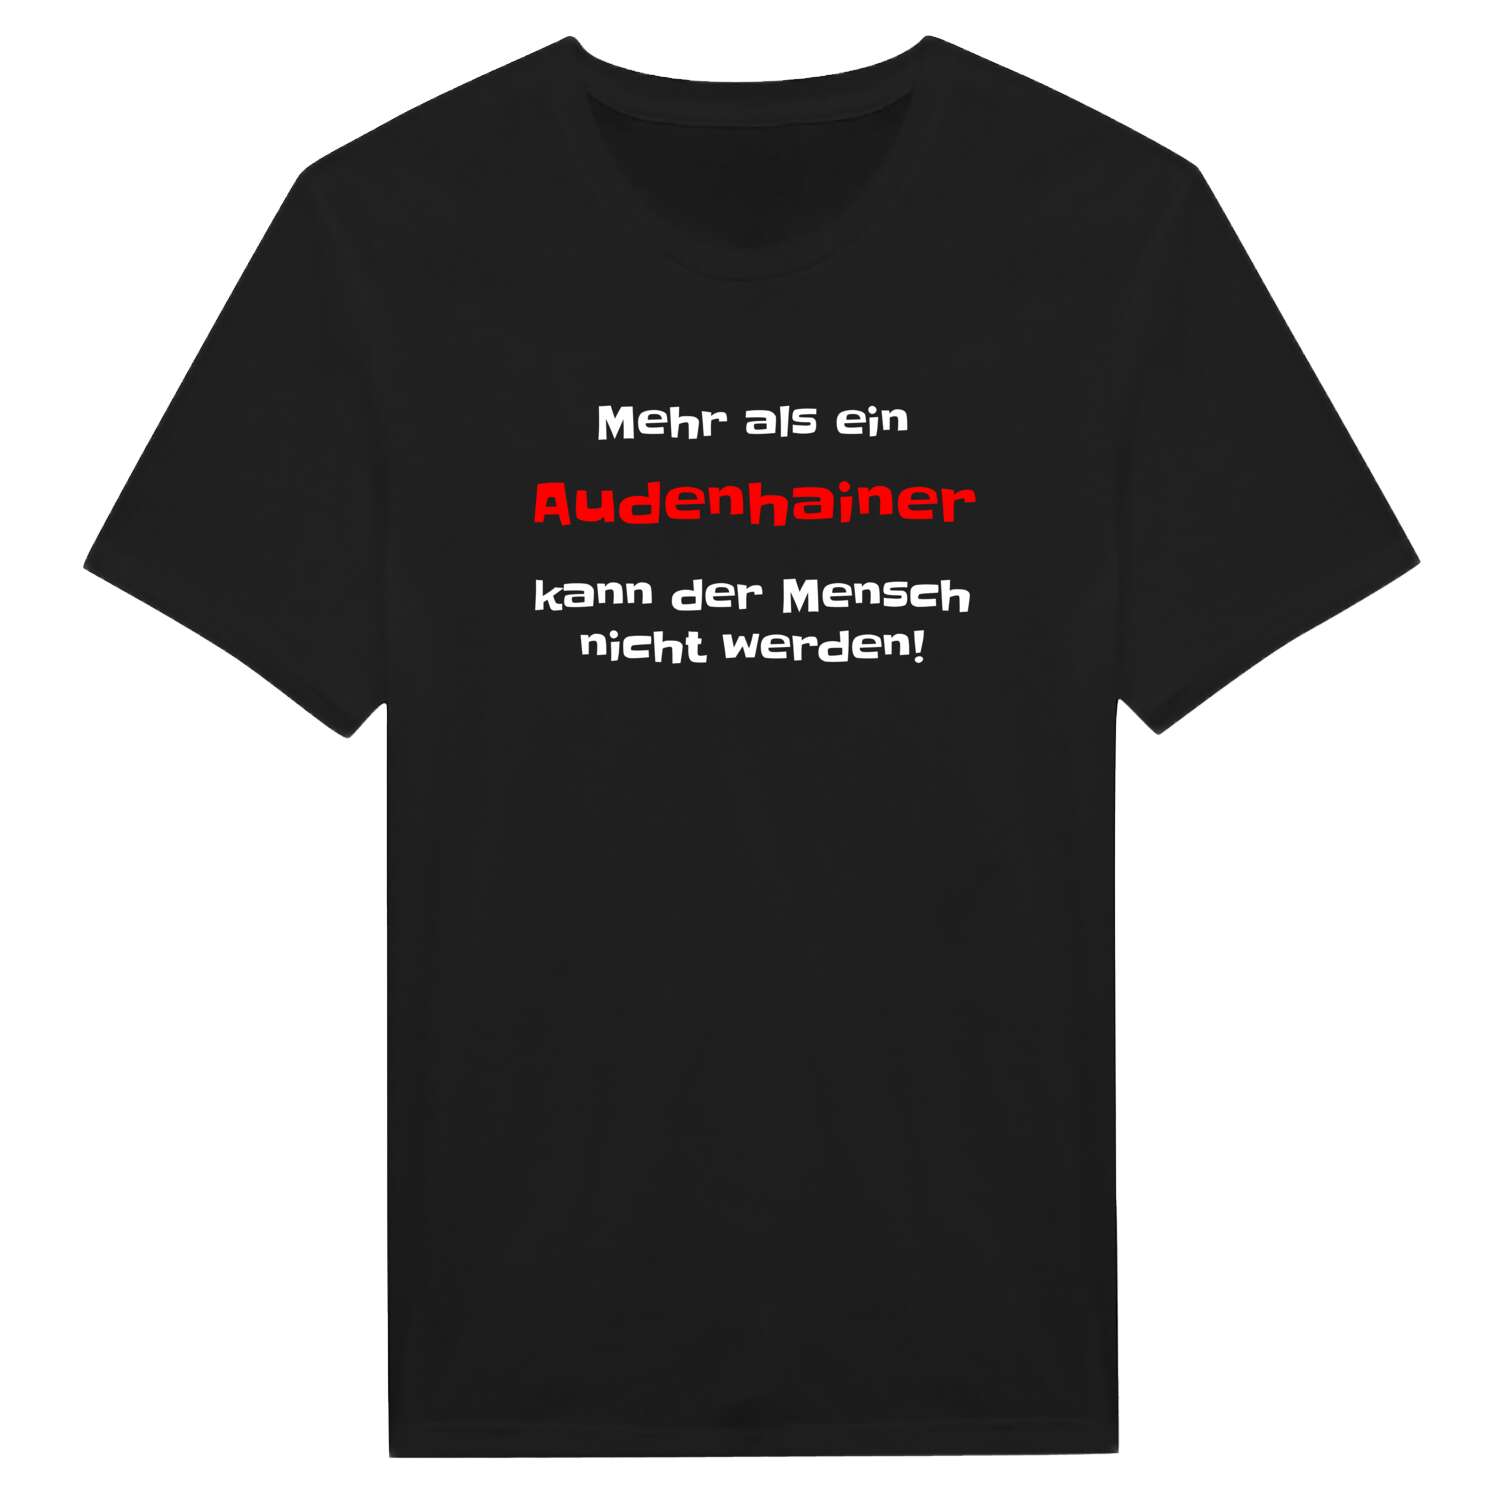 Audenhain T-Shirt »Mehr als ein«